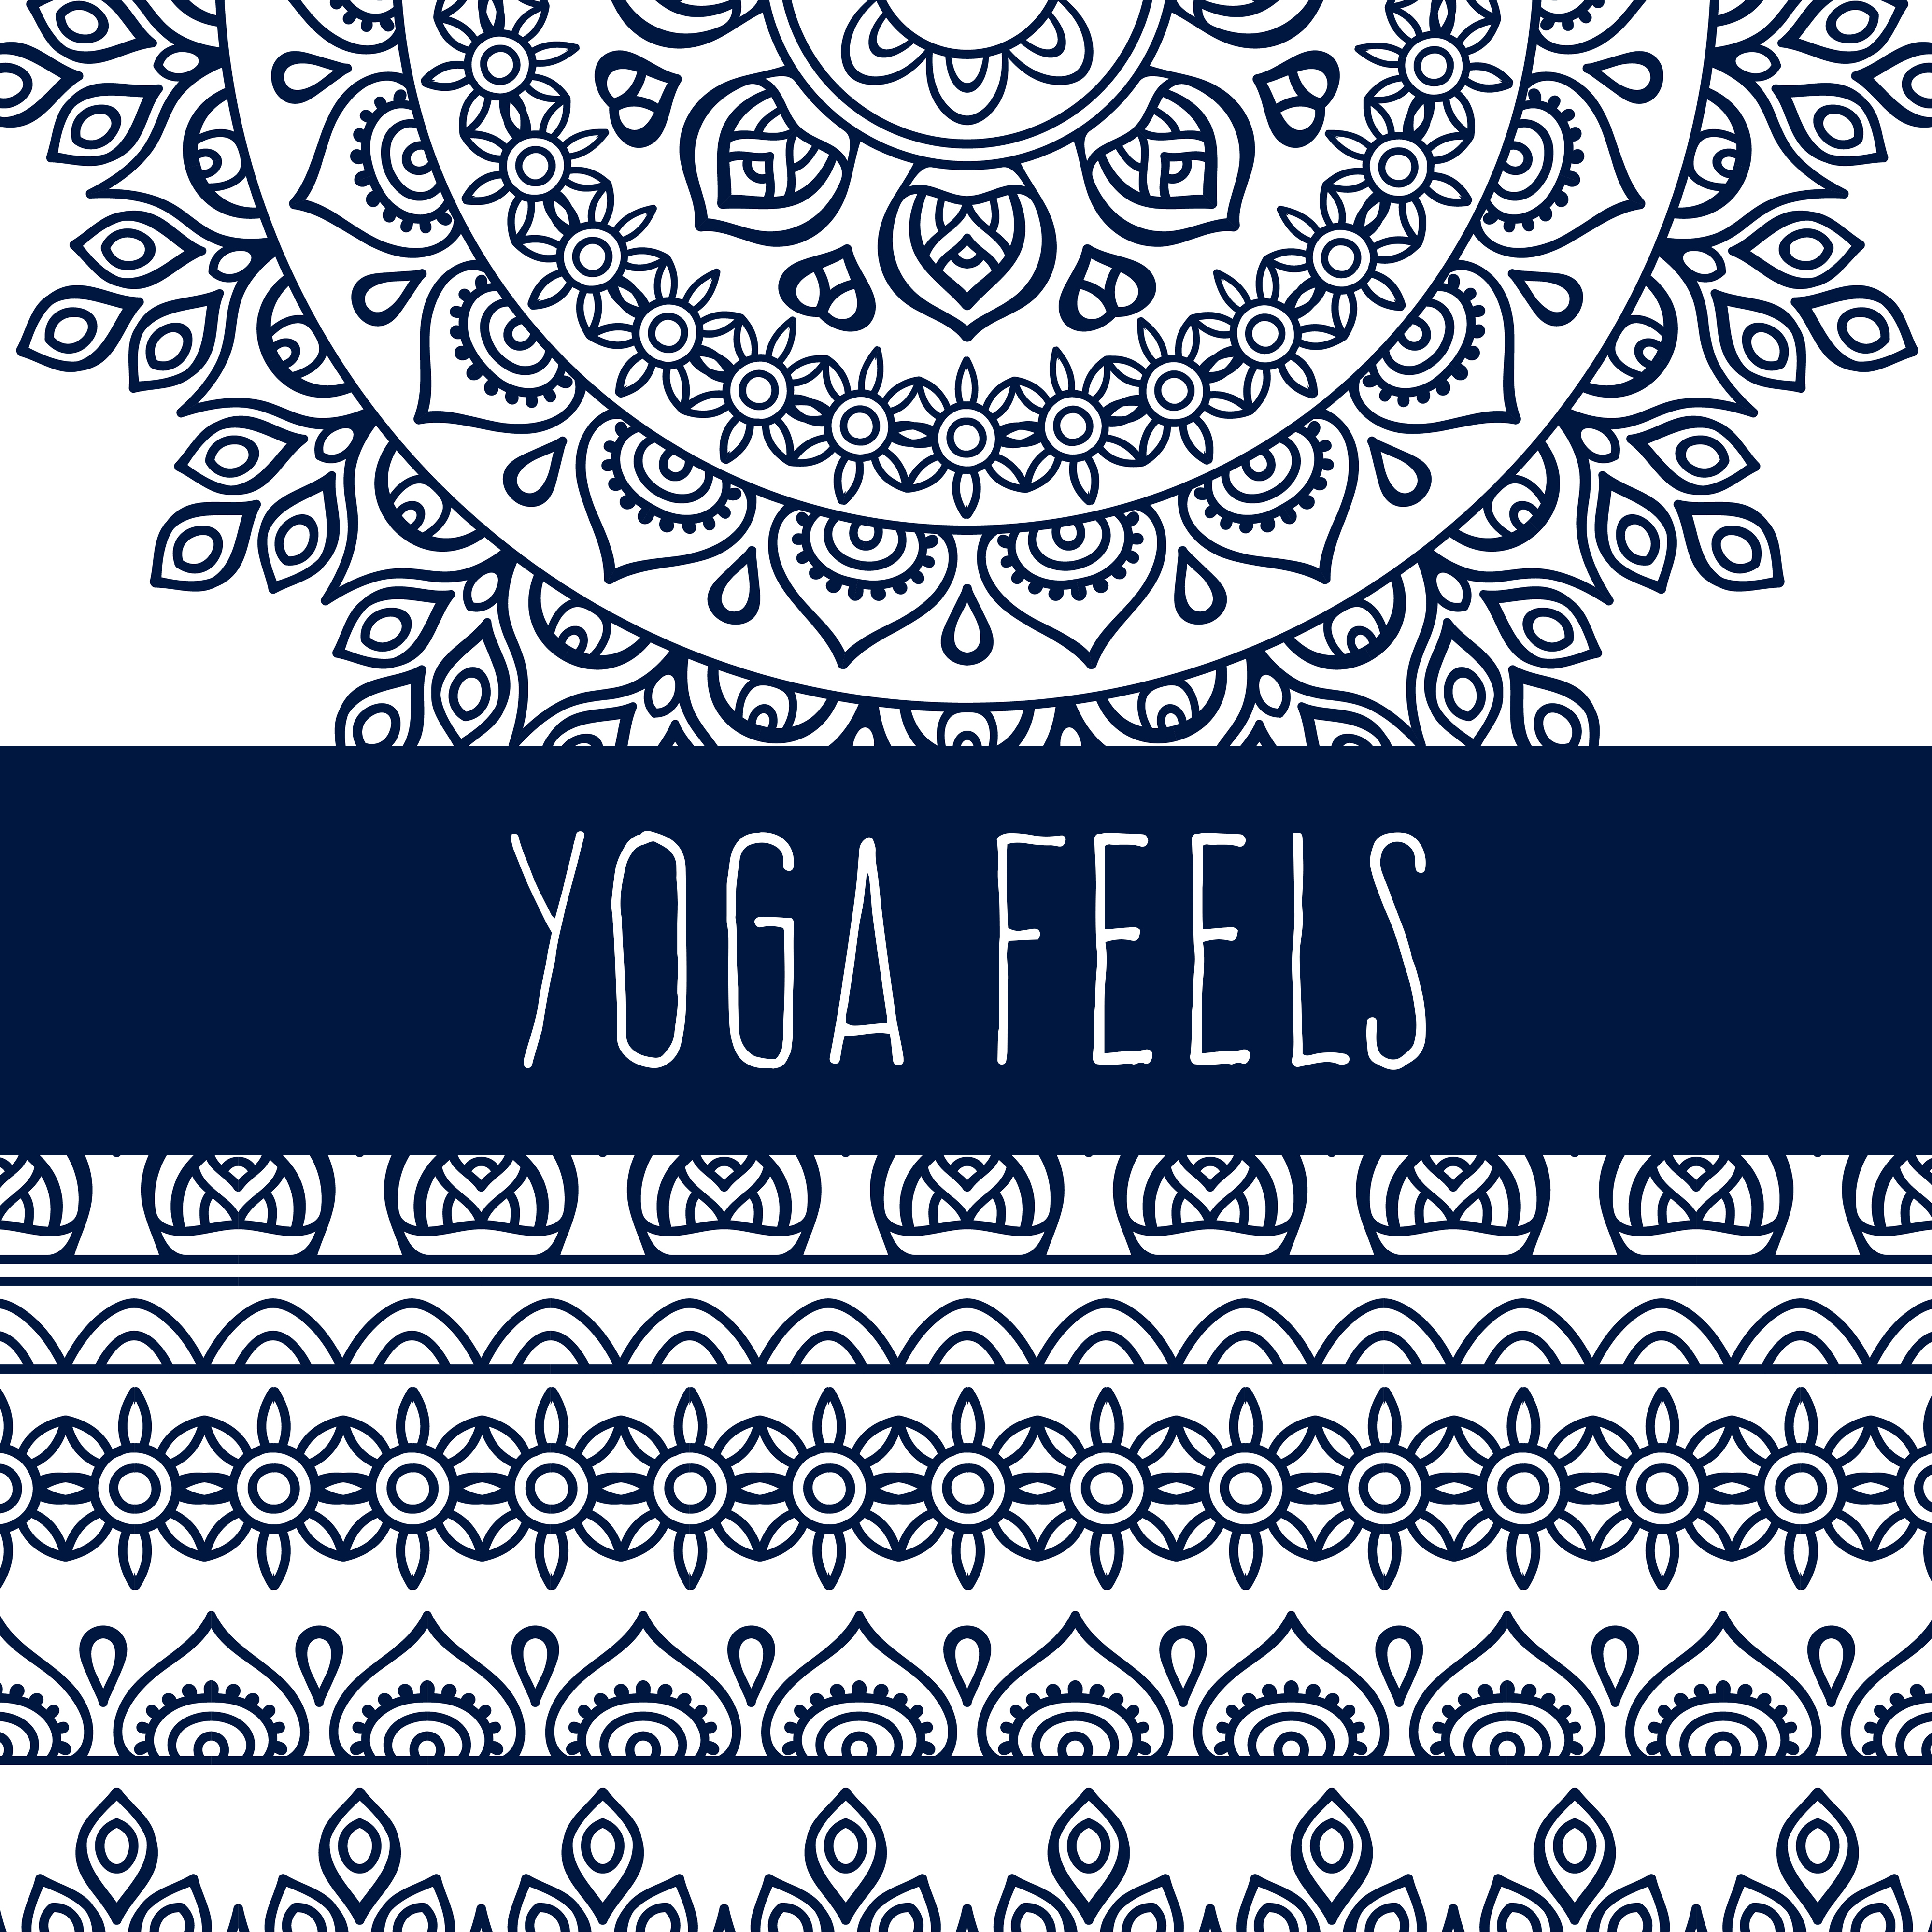 Yoga Feels